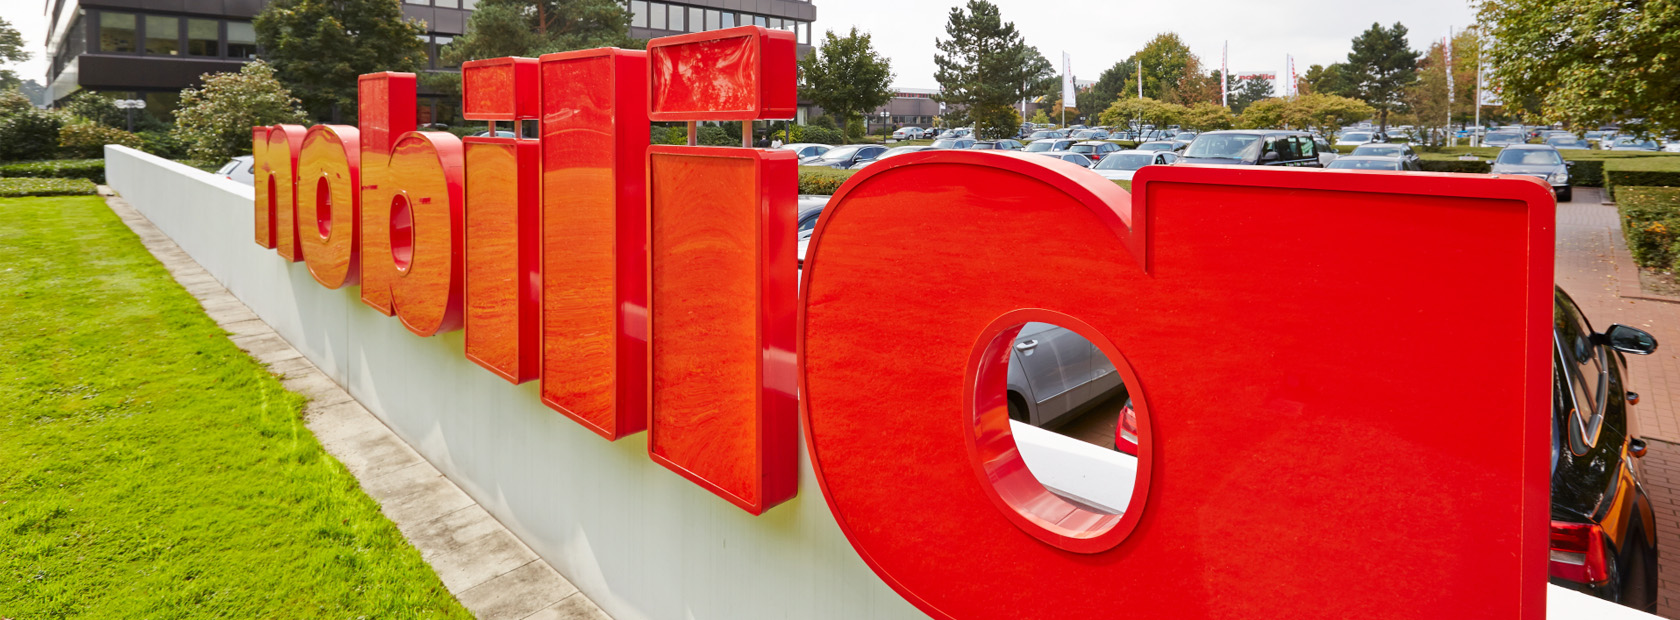 Insegne di lettere tridimensionali rosse che formano una parola installata all'aperto, con una rigogliosa vegetazione e un edificio moderno sullo sfondo.